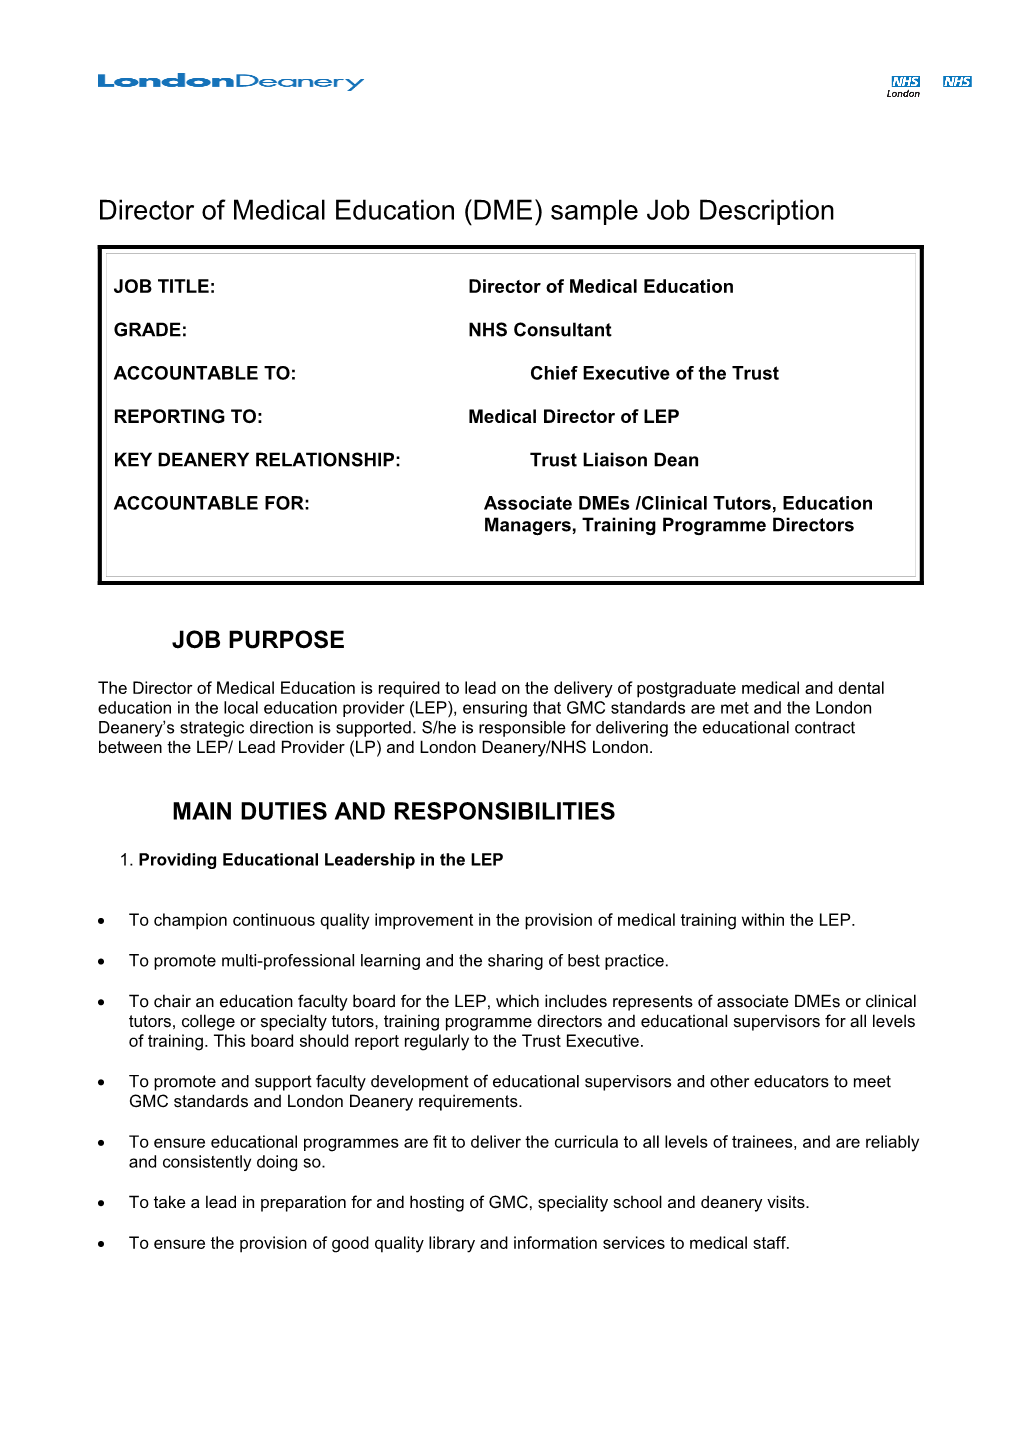 Director of Medical Education (DME) Sample Job Description